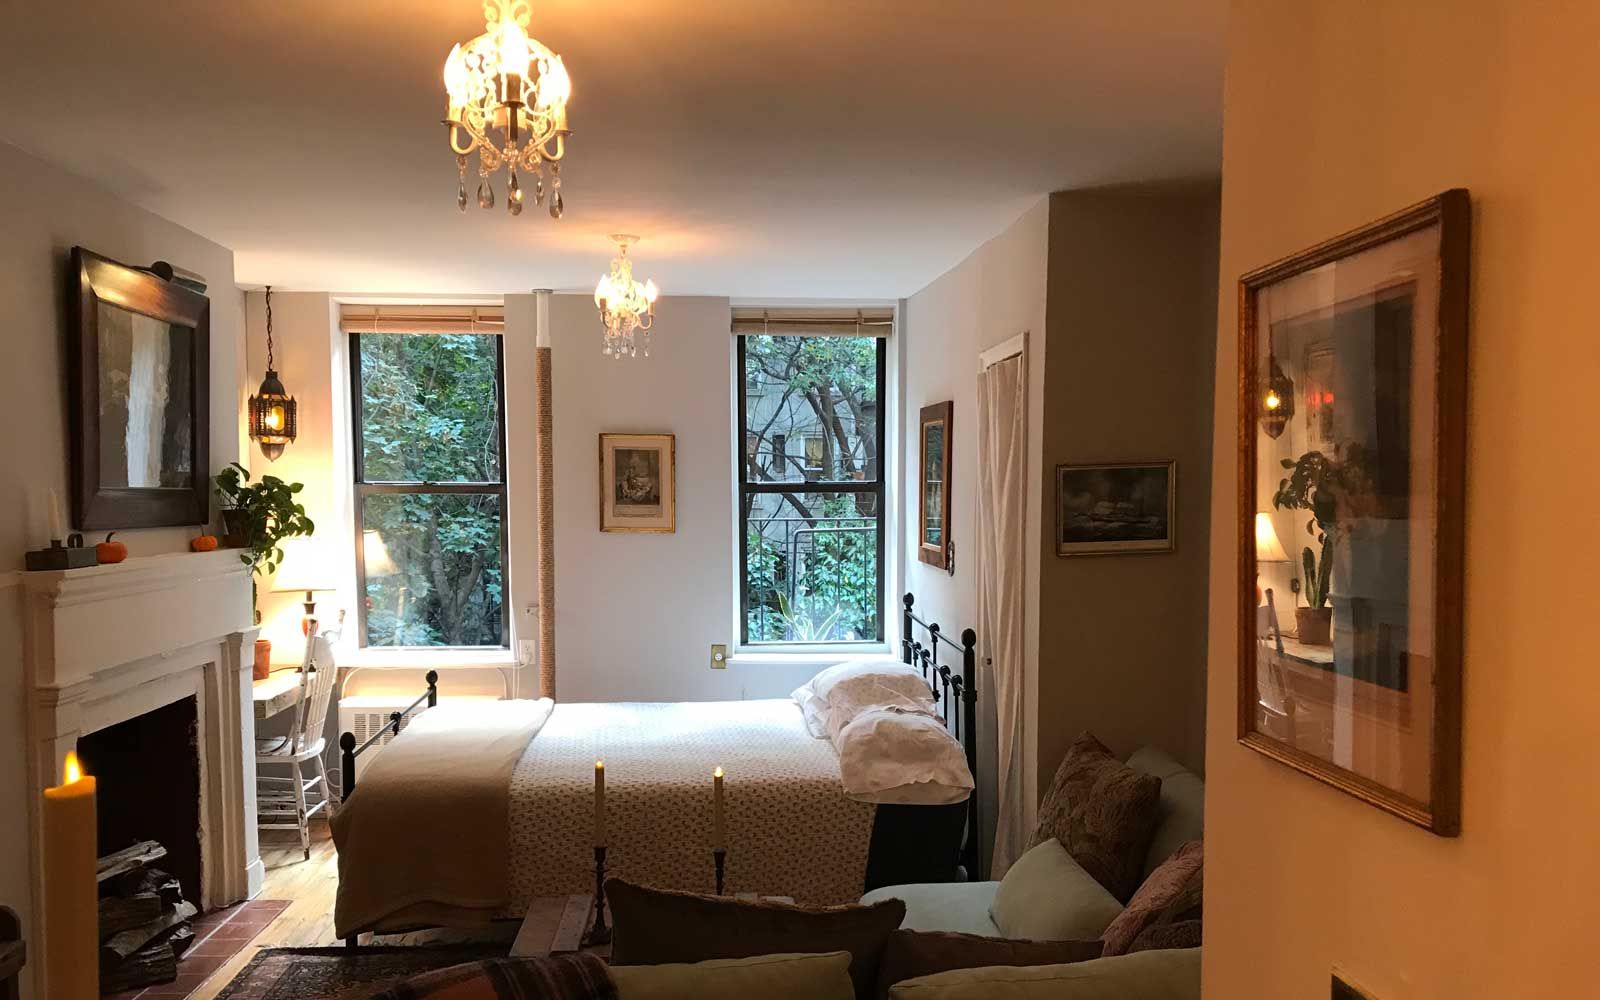 საუკეთესო Airbnbs ნიუ იორკში, მანჰეტენზე